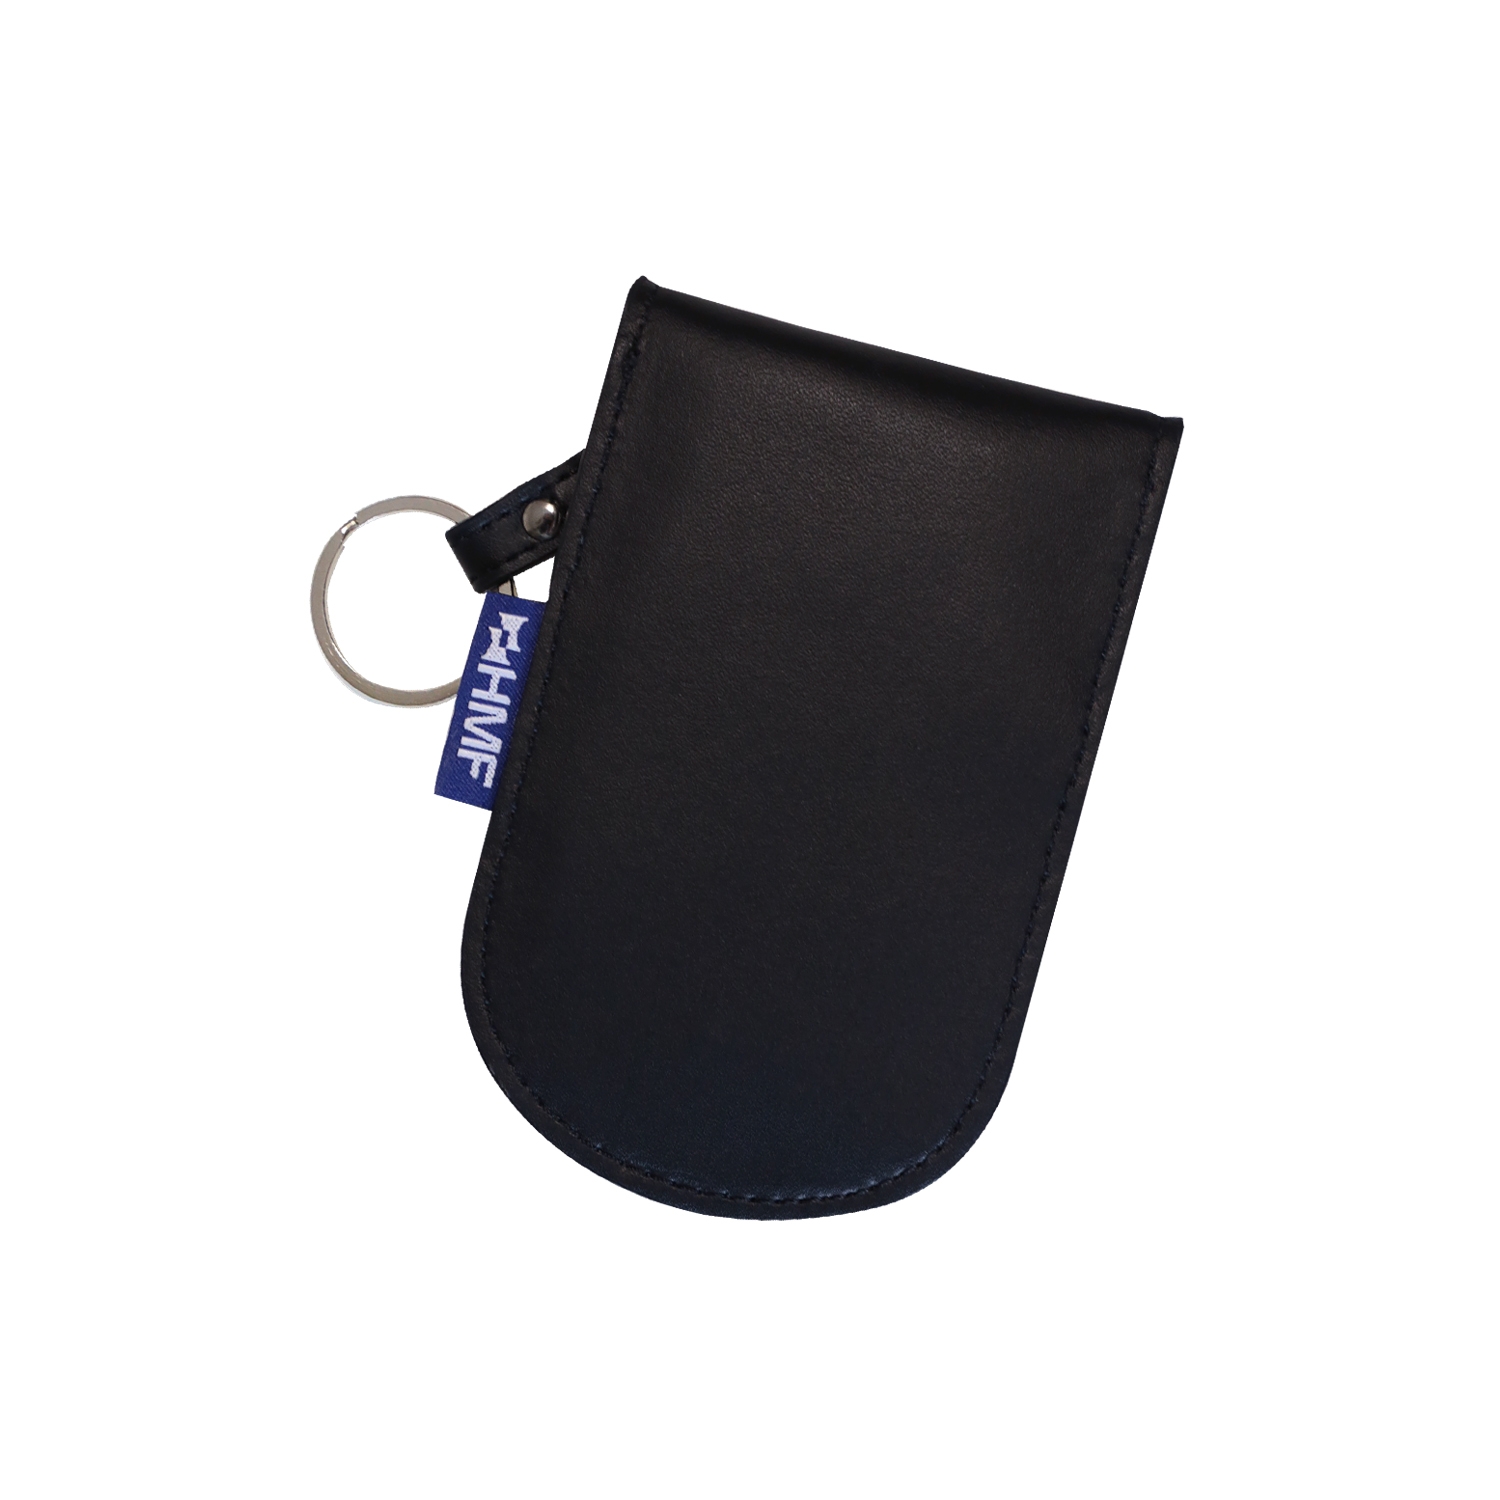 Schlüsseltasche,Keyless Go Schutz Autoschlüssel, 2er Pack Mini RFID  Autoschlüssel Schutz Keyless Go Schutzhülle Funkschlüssel Abschirmung